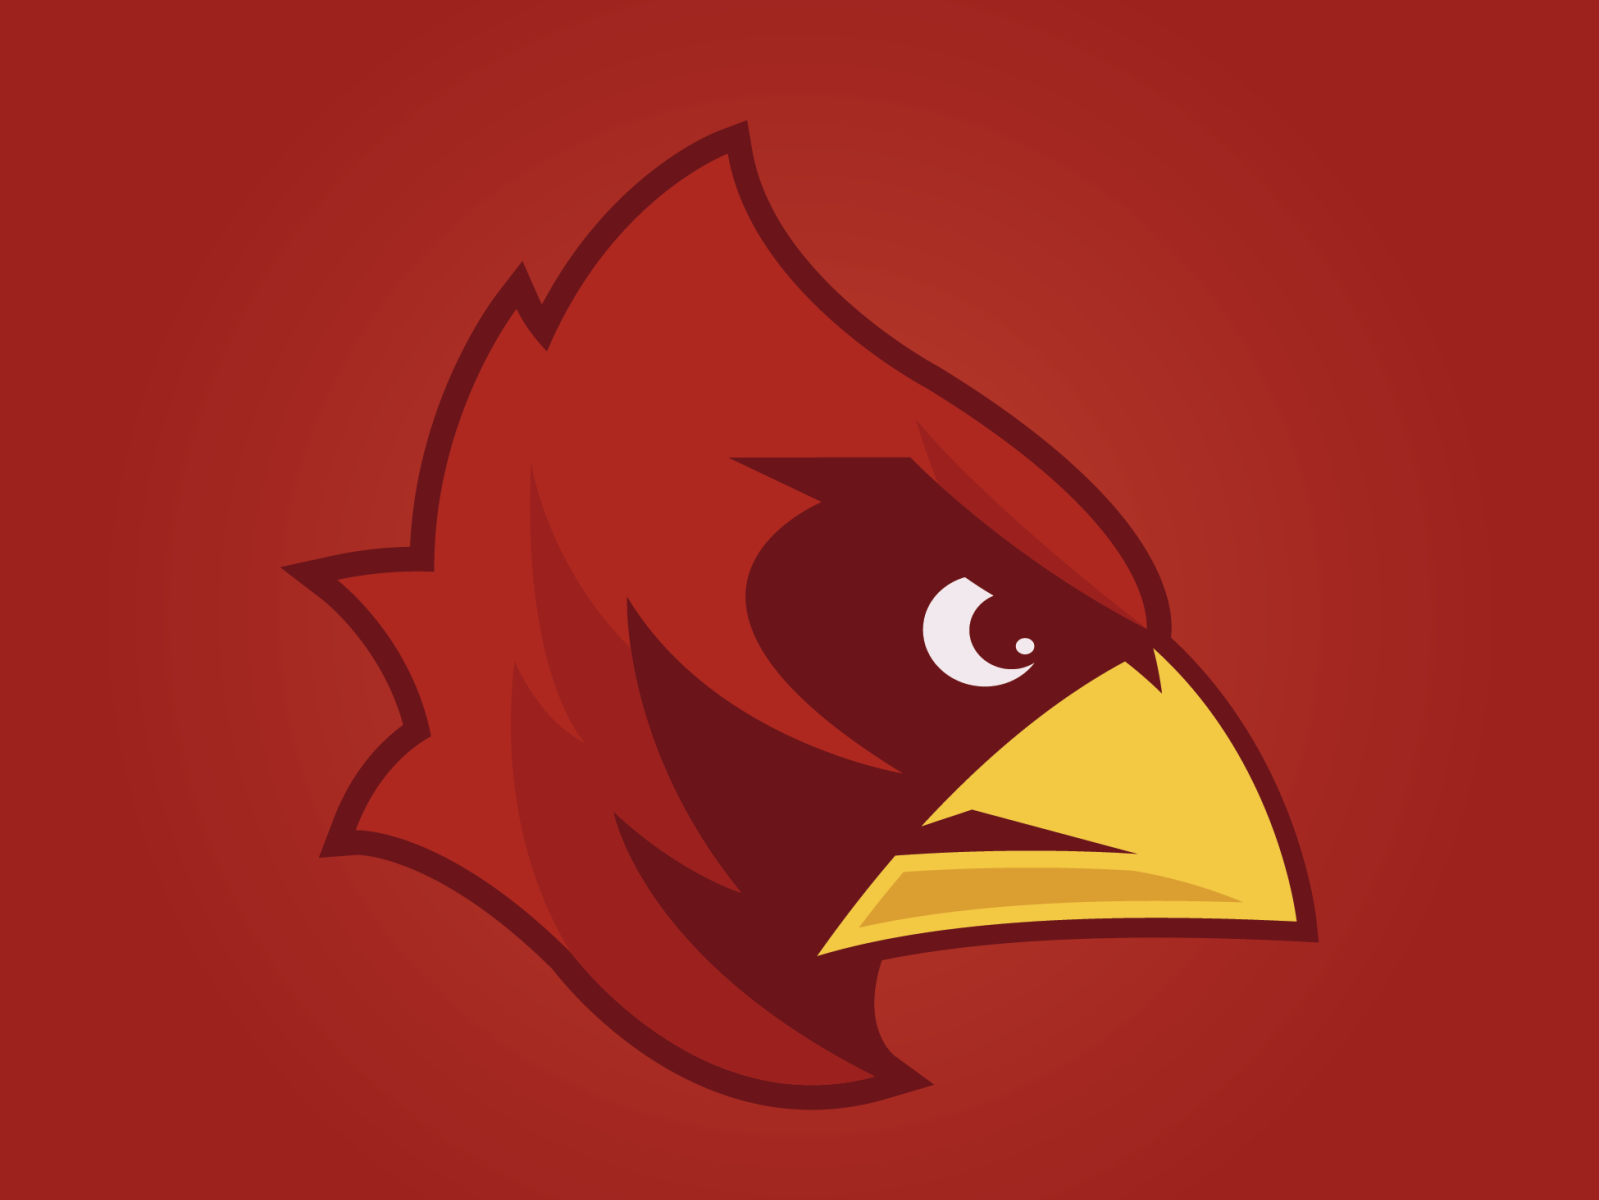 Louisville Cardinals by Luke Orient on Dribbble